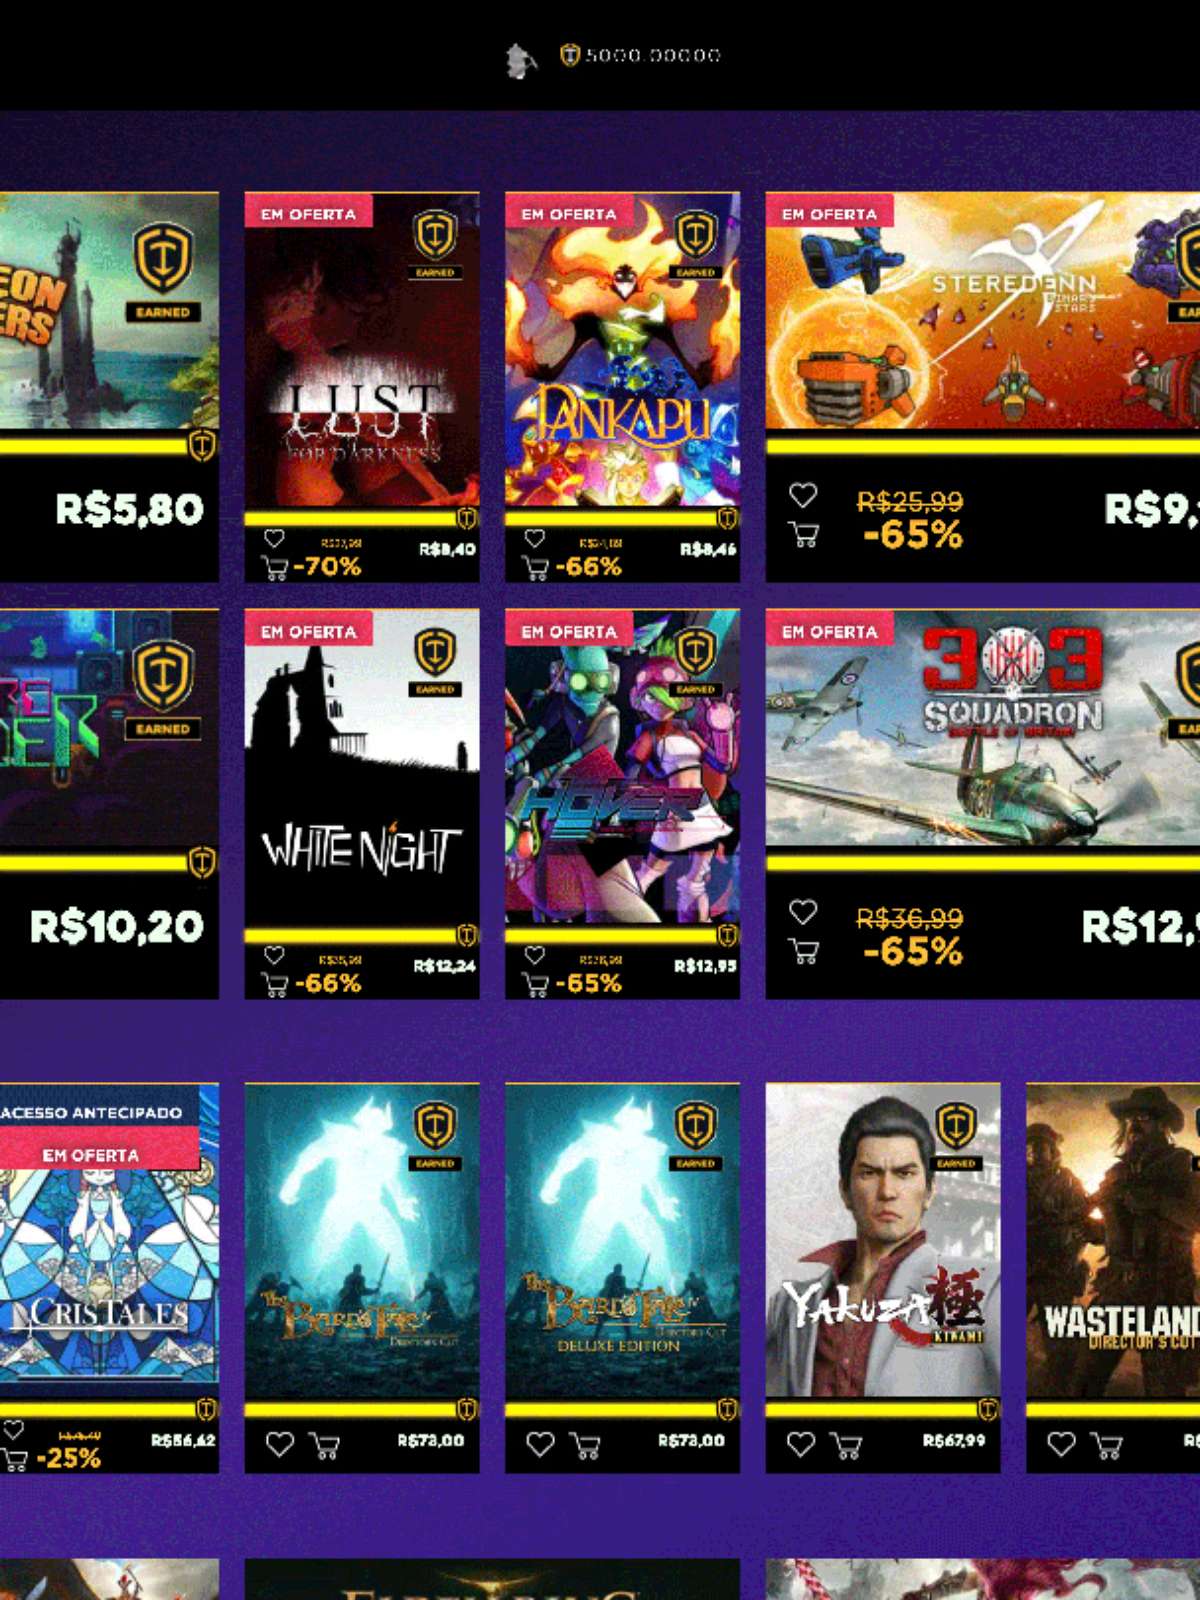 XOGO: Conheça a nova loja brasileira de jogos digitais para PC